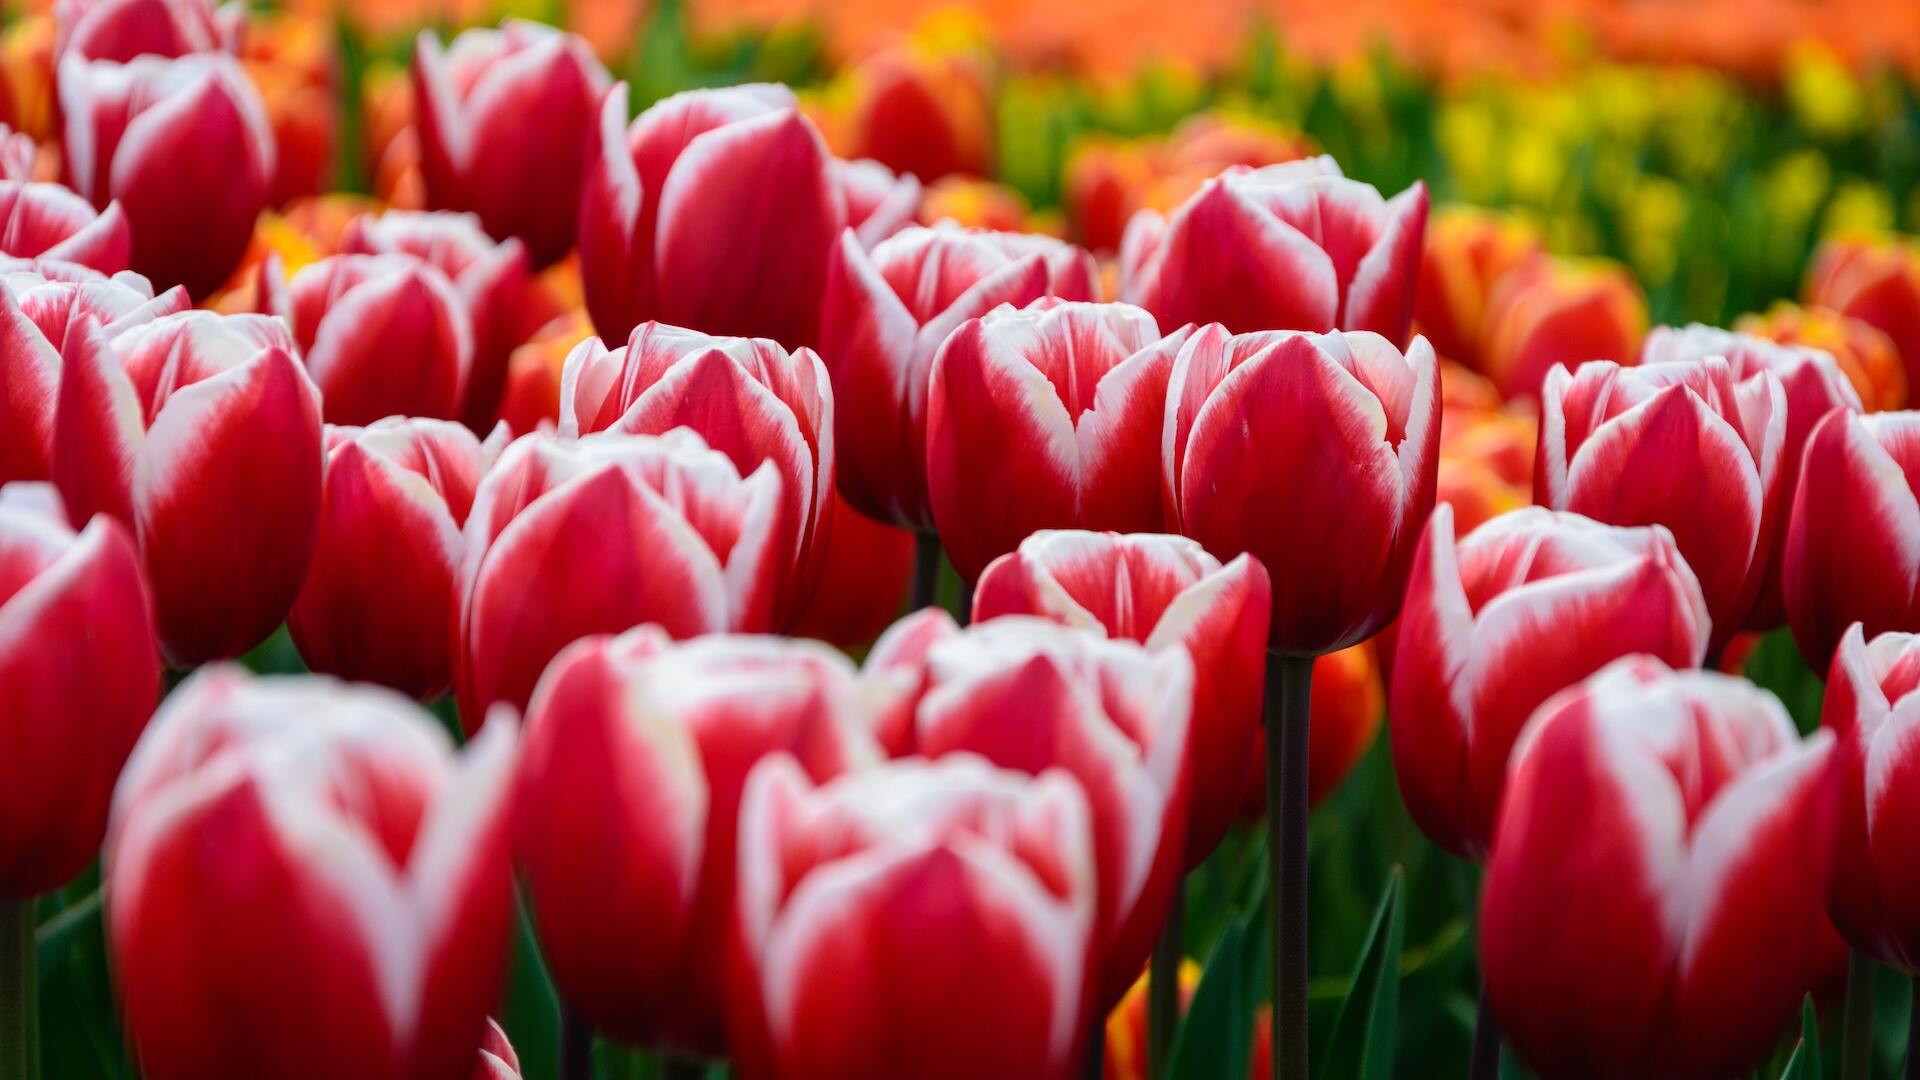 Esta lista de destinos va dedicada a todos aquellos amantes de los tulipanes